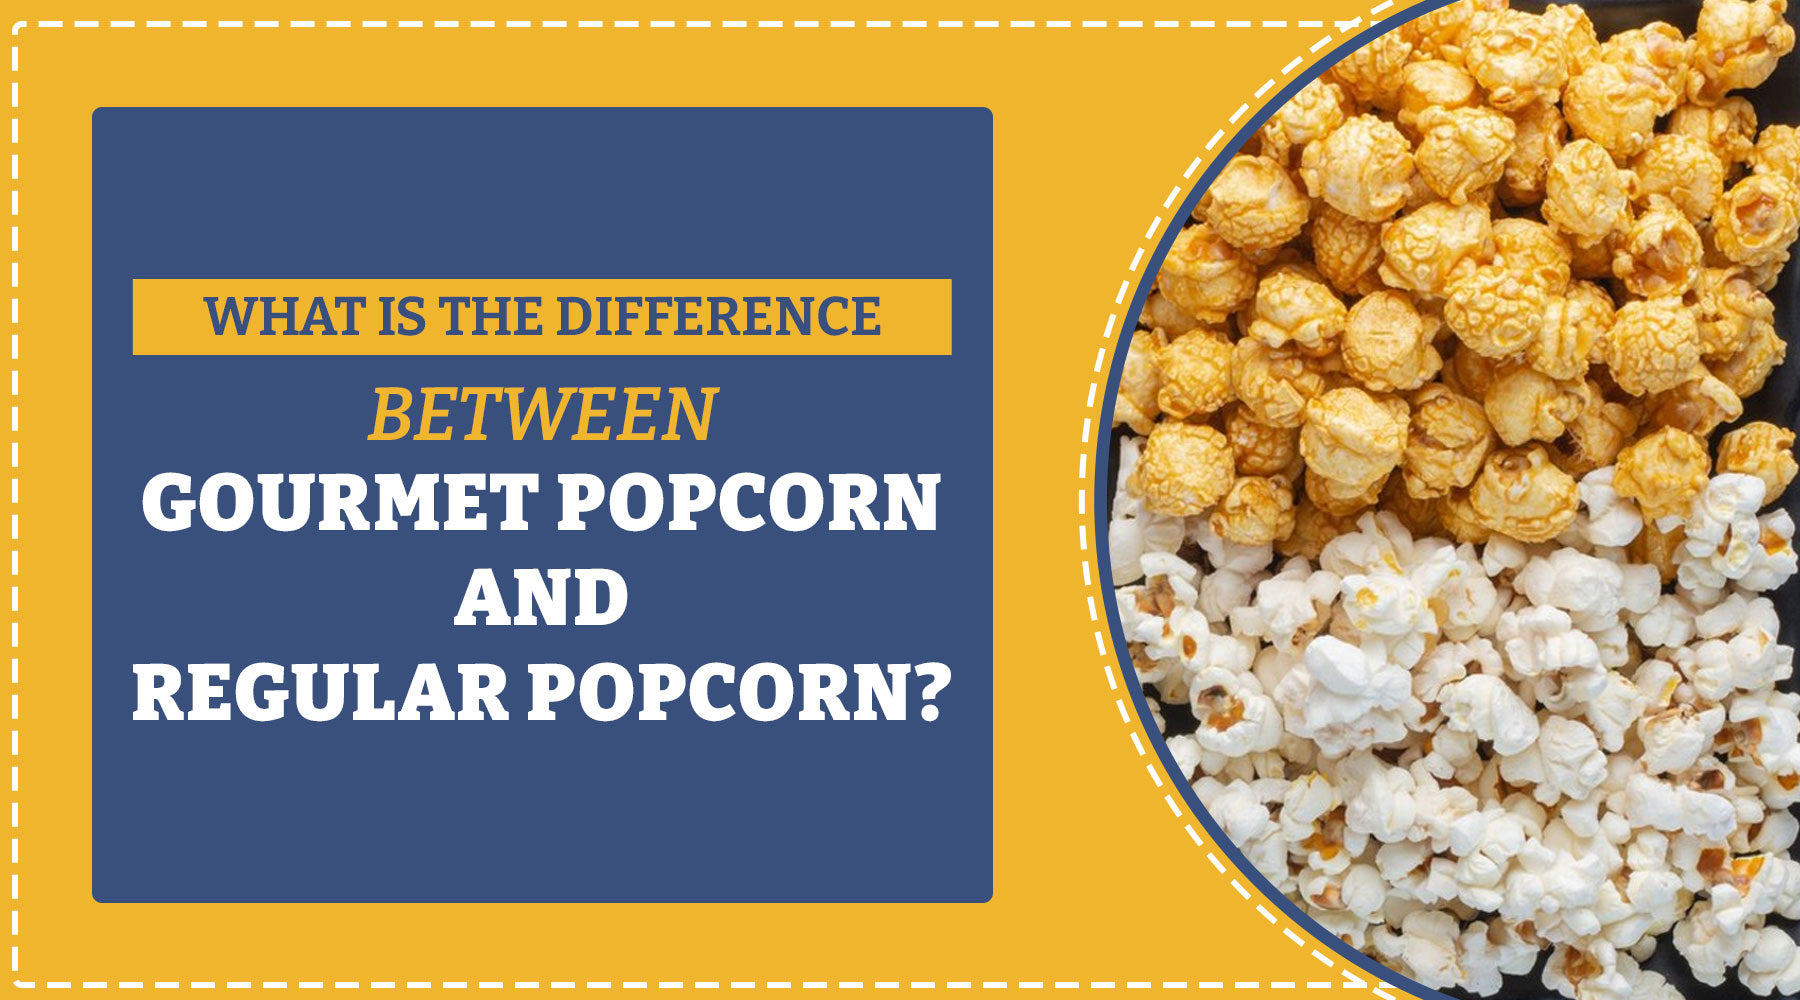 Gourmet popcorn vs regular popcorn